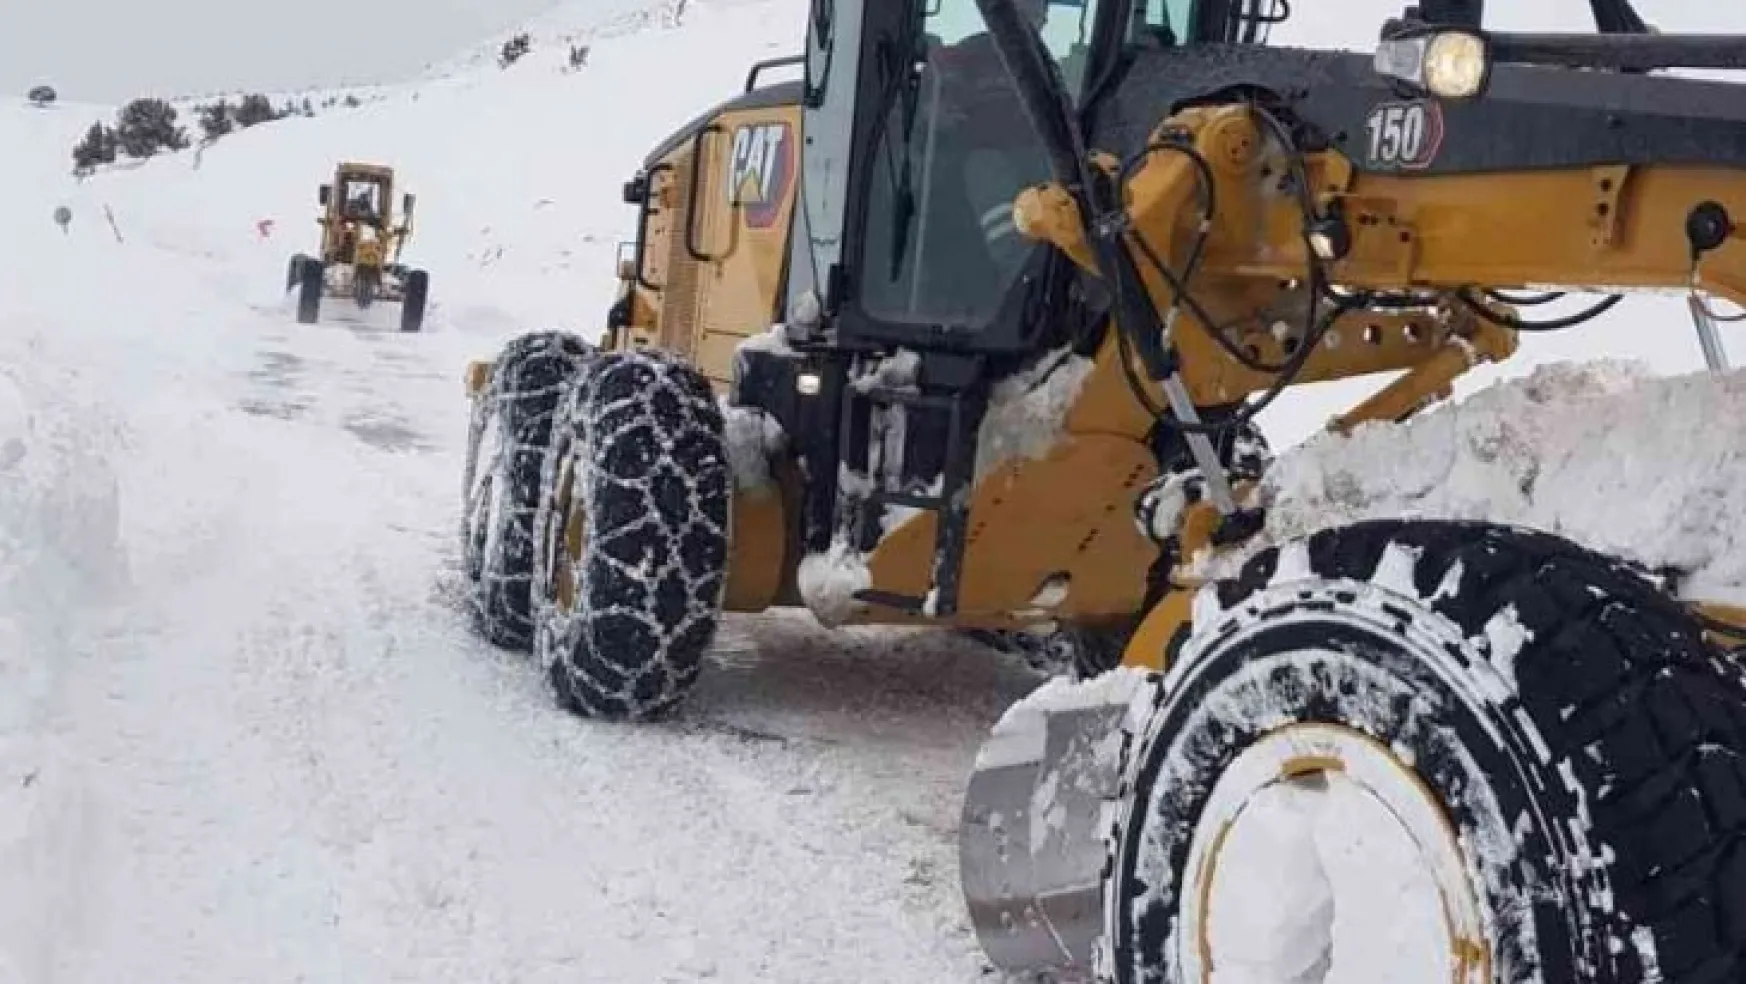 Büyükşehir'den en ücra bölgelerde bile karla mücadele çalışması